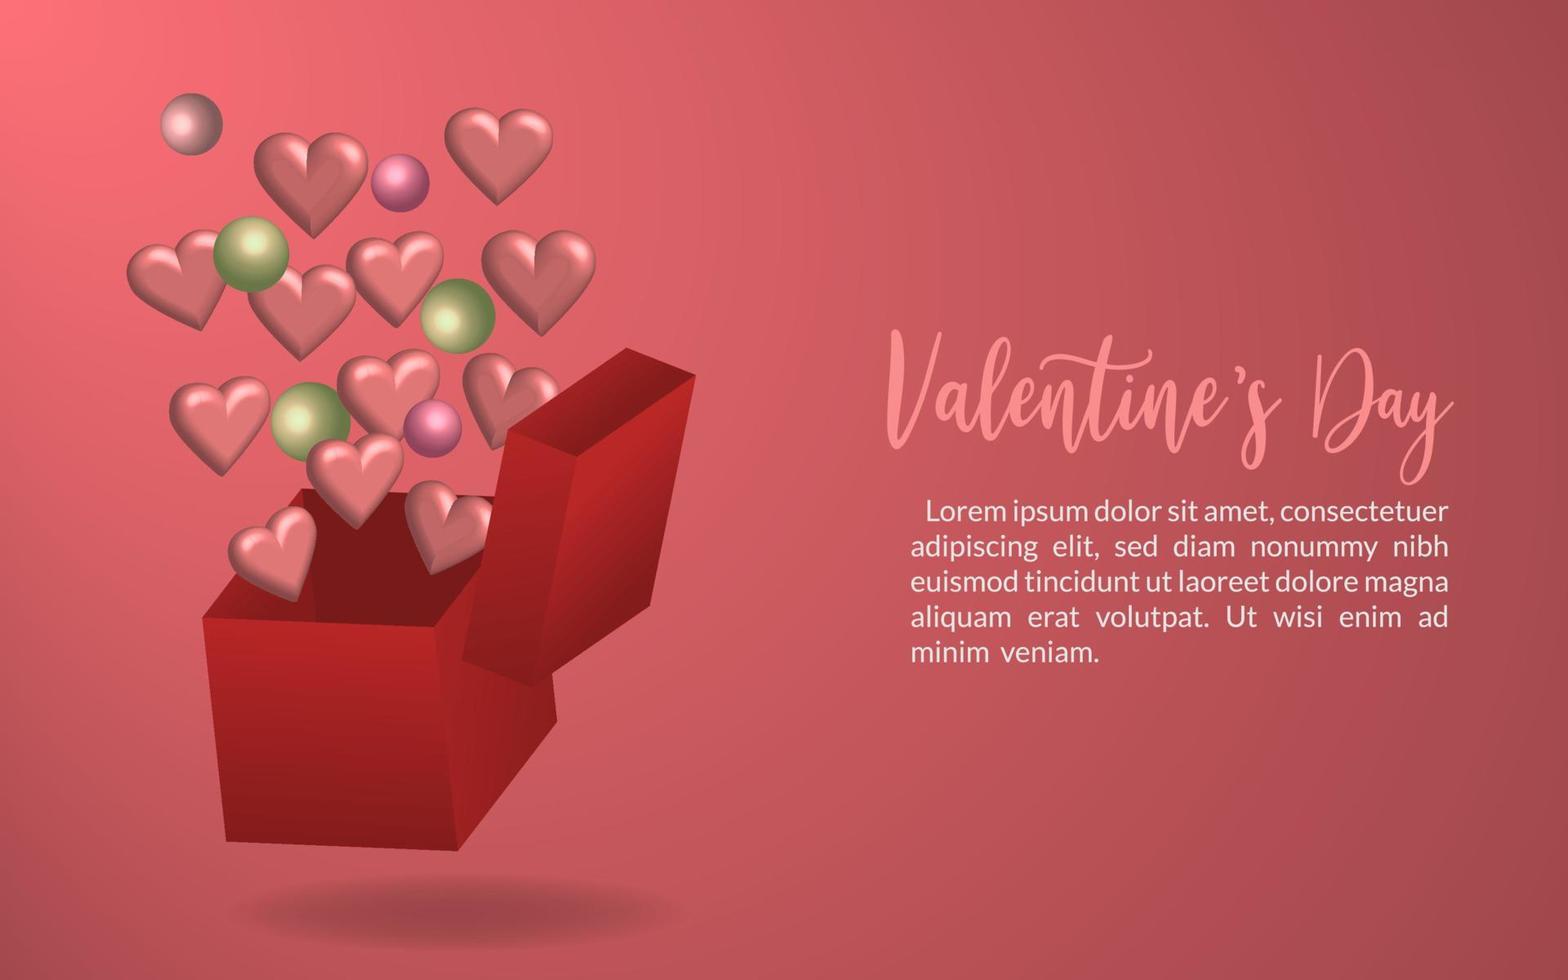 ontwerp verrassen ballonnen hart illustratie , viering decoratie gelukkig valentijnsdag dag , banier groet 3d realisitc geschenk uitnodiging vector